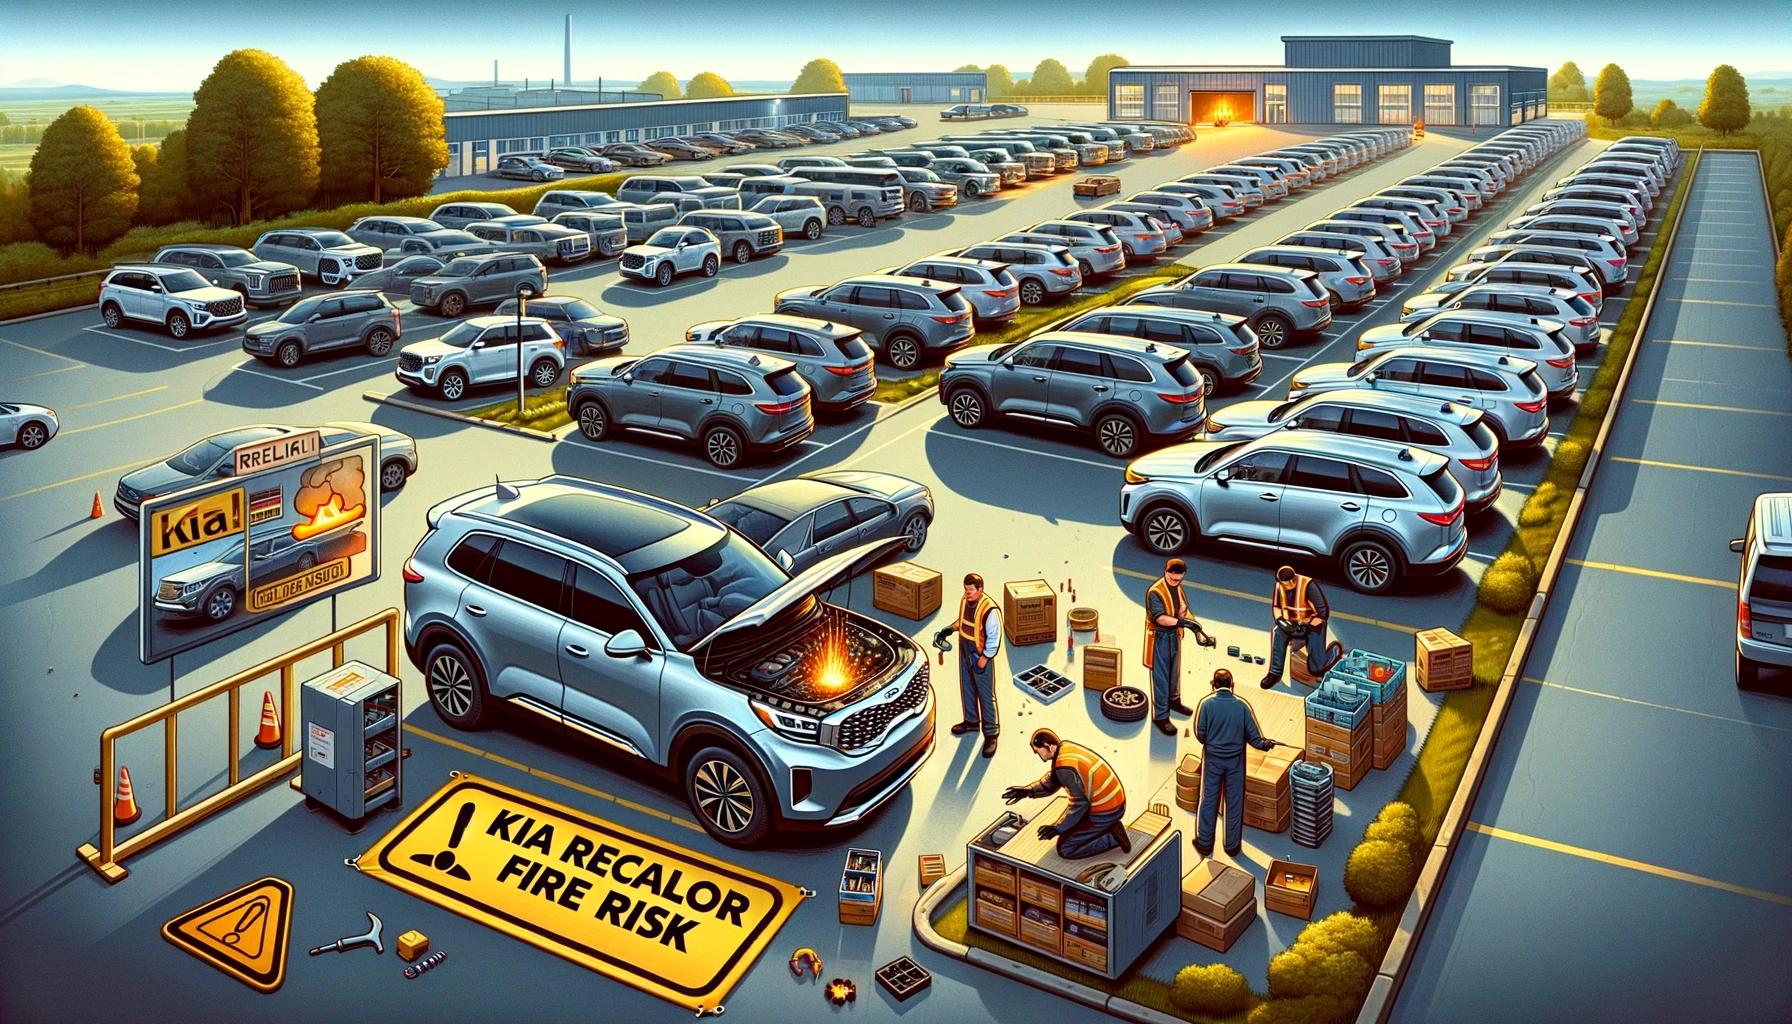 Kia emite "recall" masivo a casi medio millón de autos